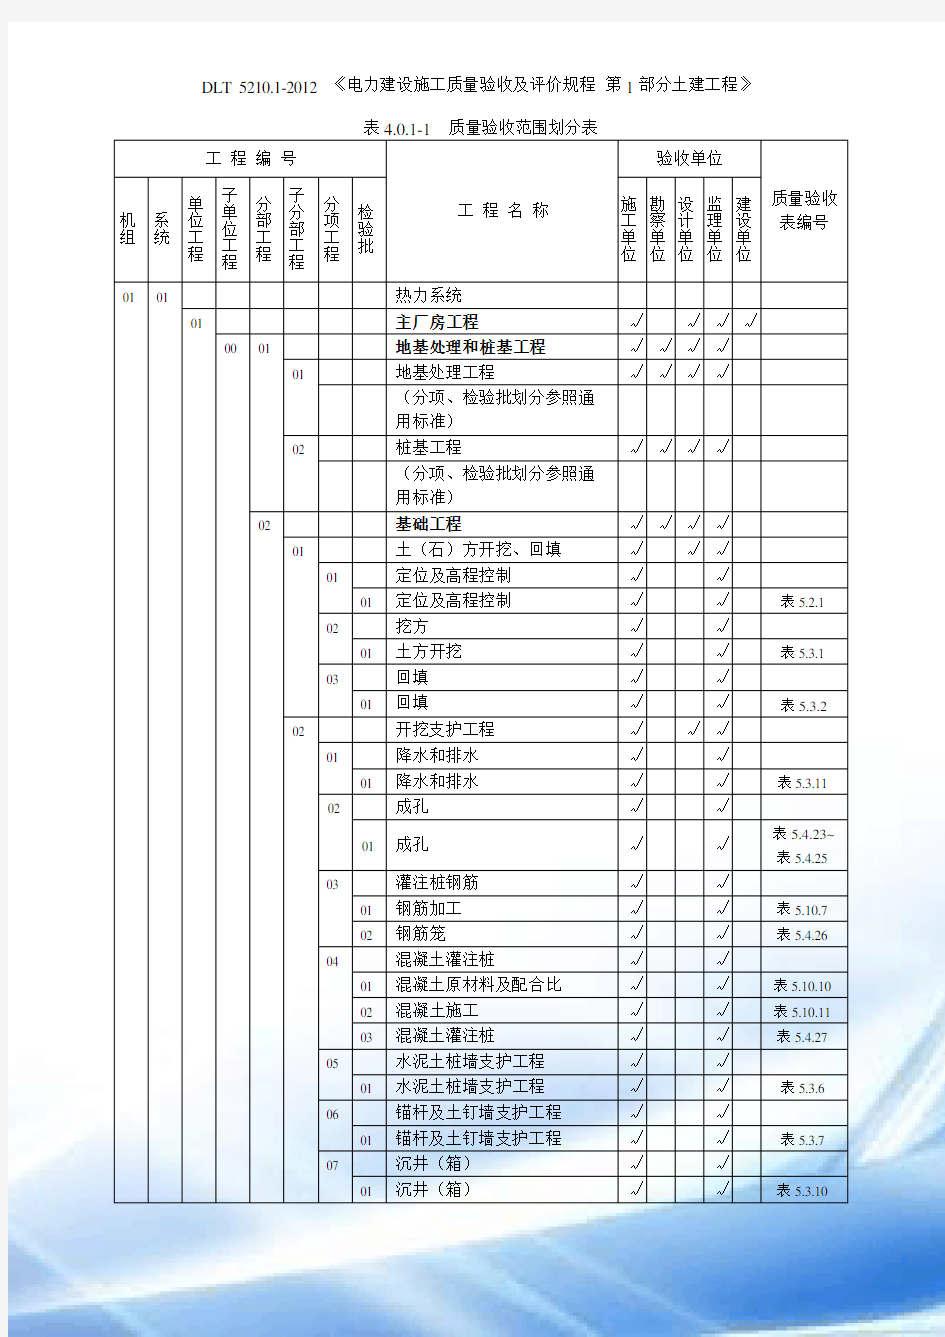 表4.0.1-1-质量验收范围划分表(DL／T-5210.1-2012)